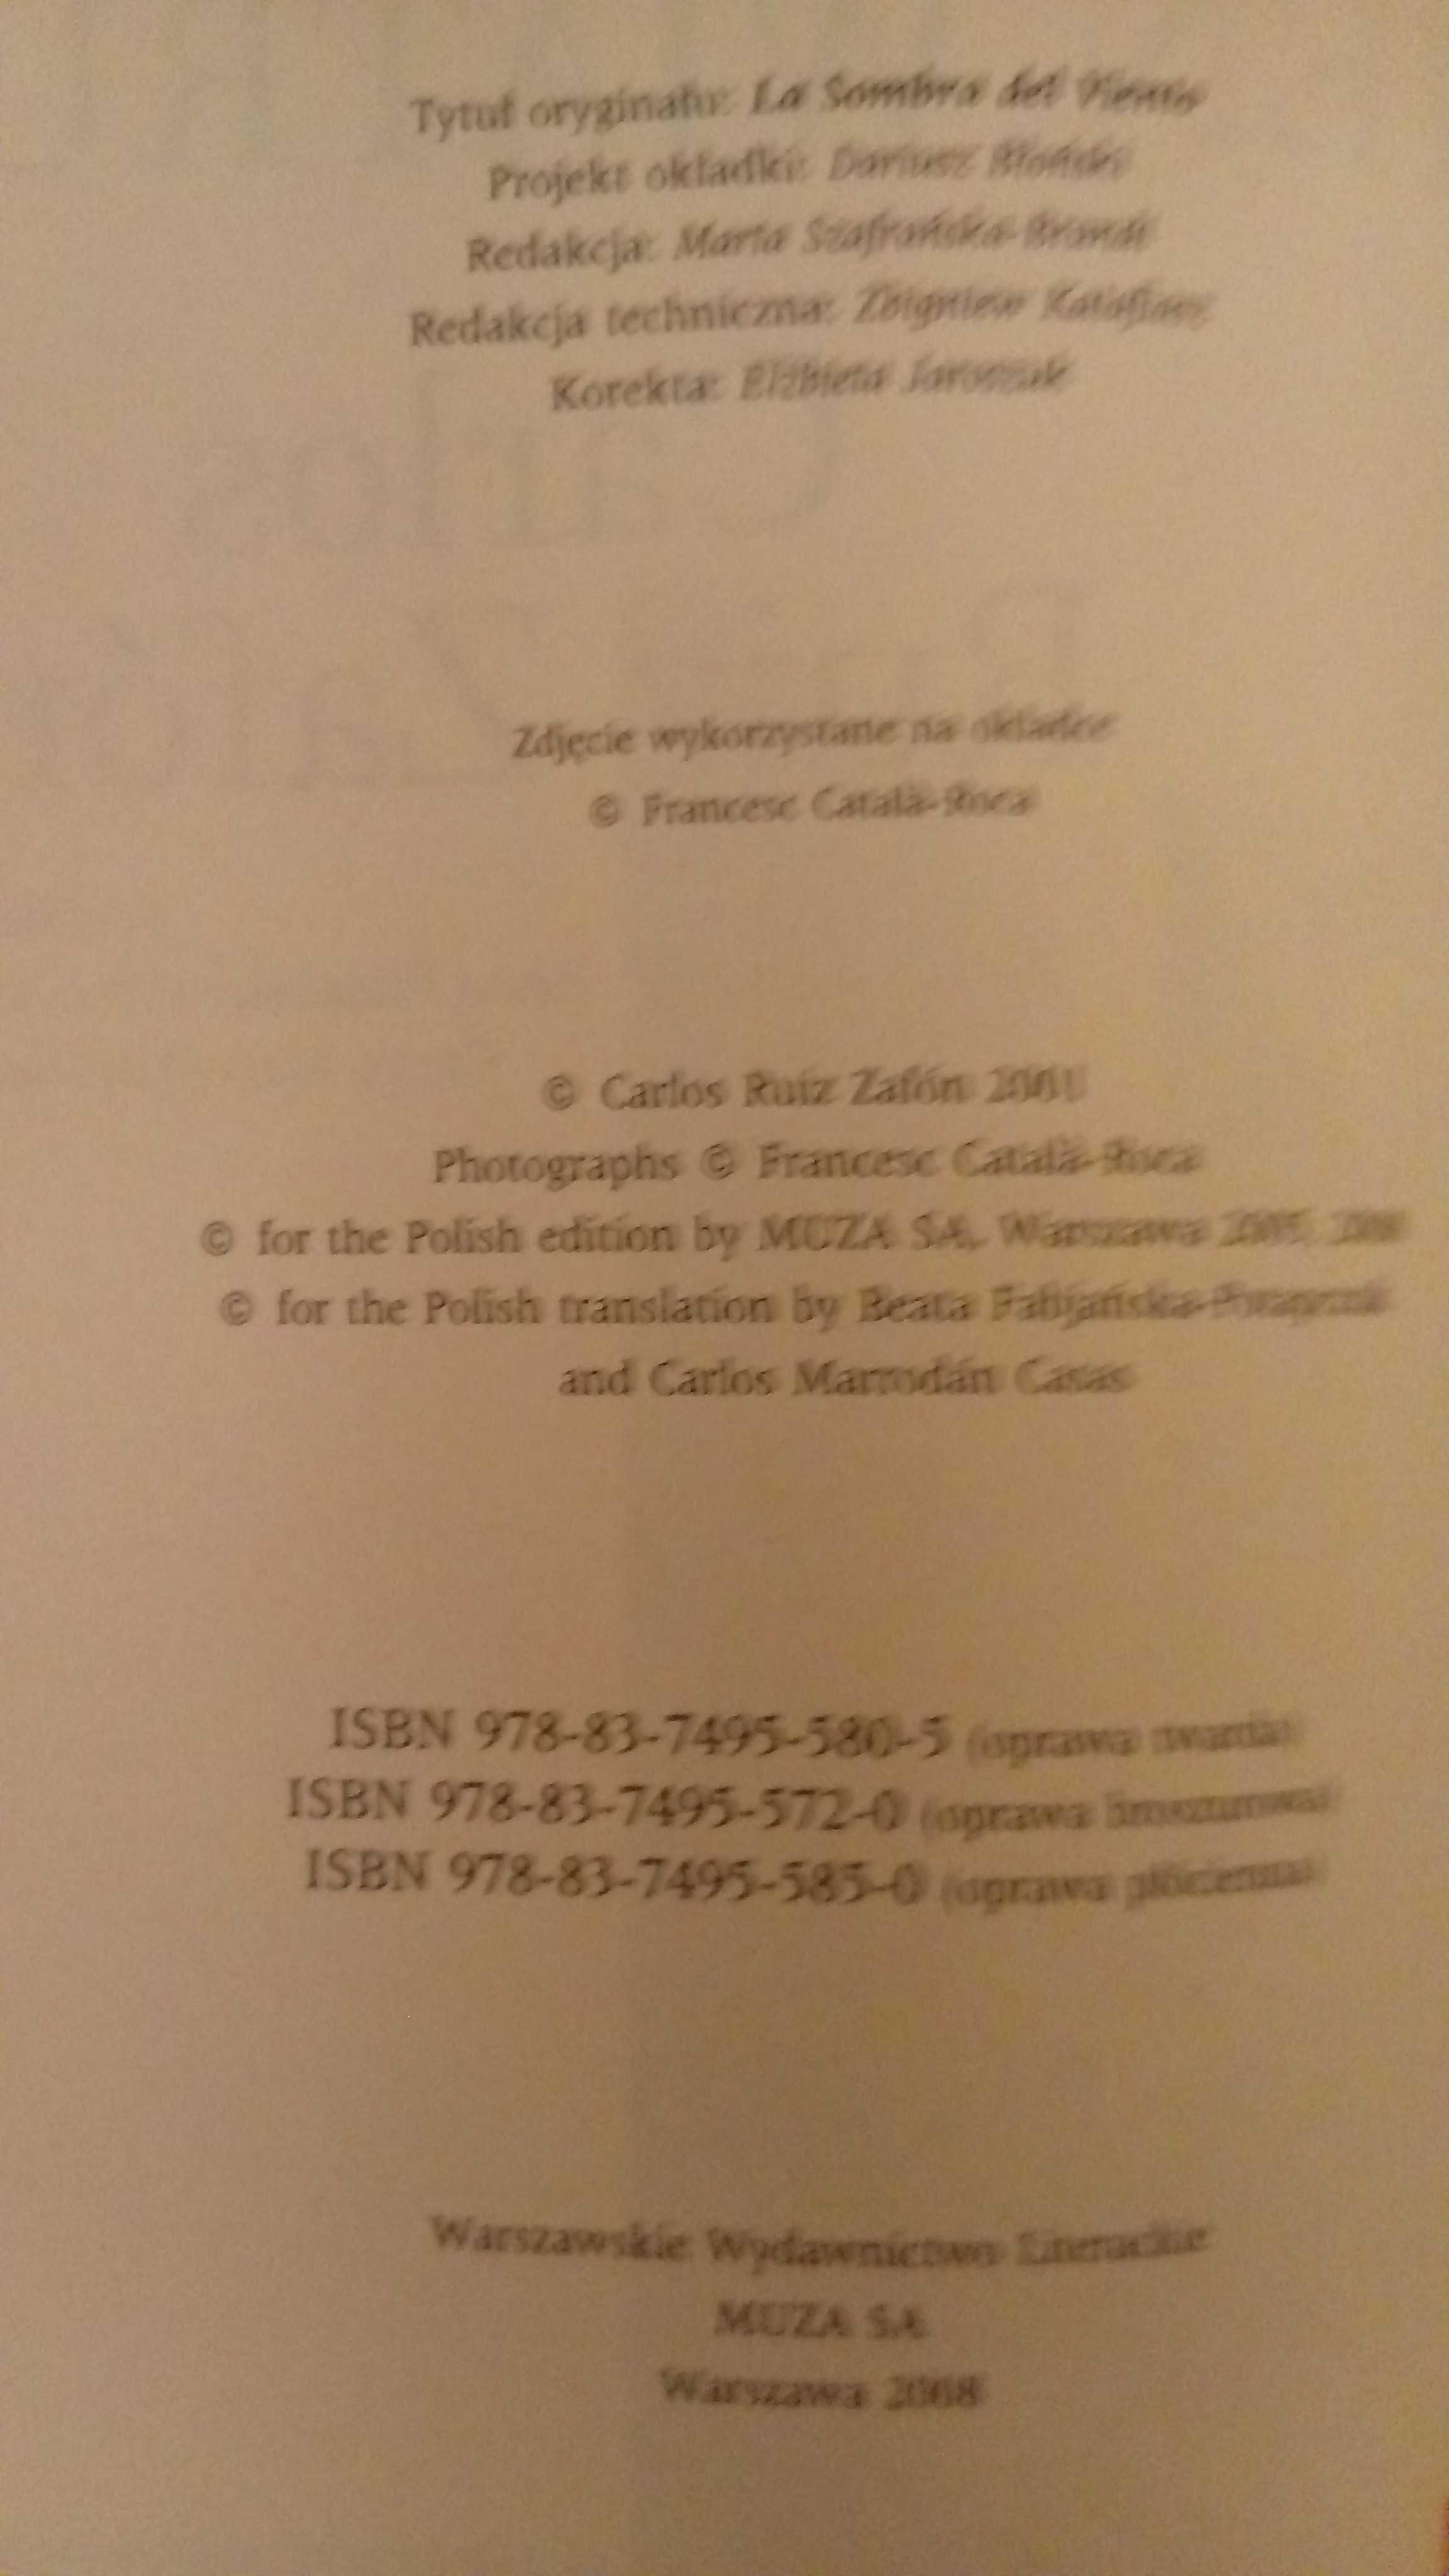 Książki "Cień wiatru" i "Gra Anioła" C. R. Zafona - cena za 2 książki